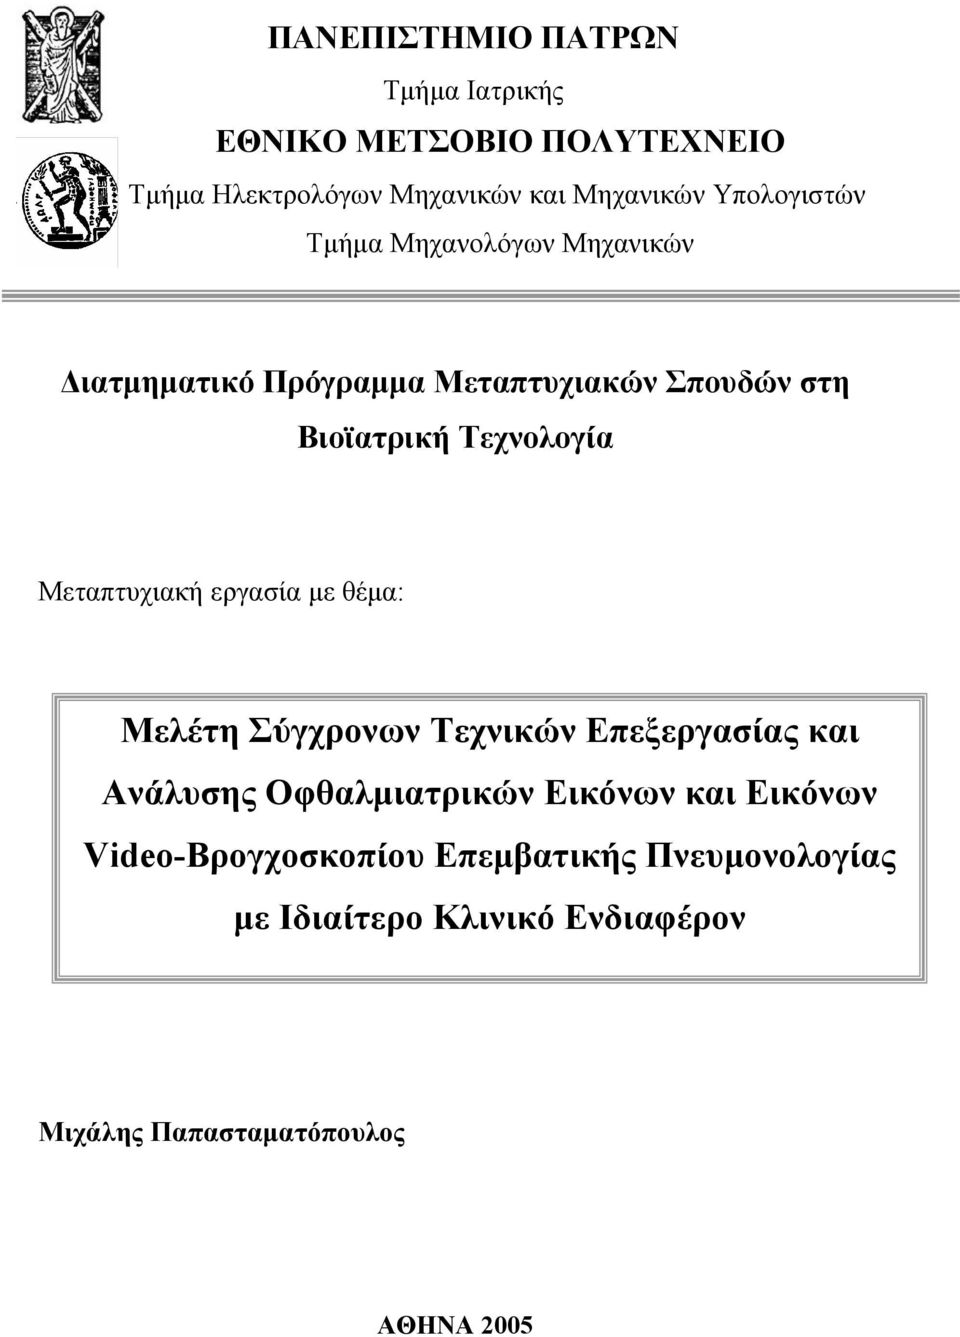 Μεταπτυχιακή εργασία με θέμα: Μελέτη Σύγχρονων Τεχνικών Επεξεργασίας και Ανάλυσης Οφθαλμιατρικών Εικόνων και